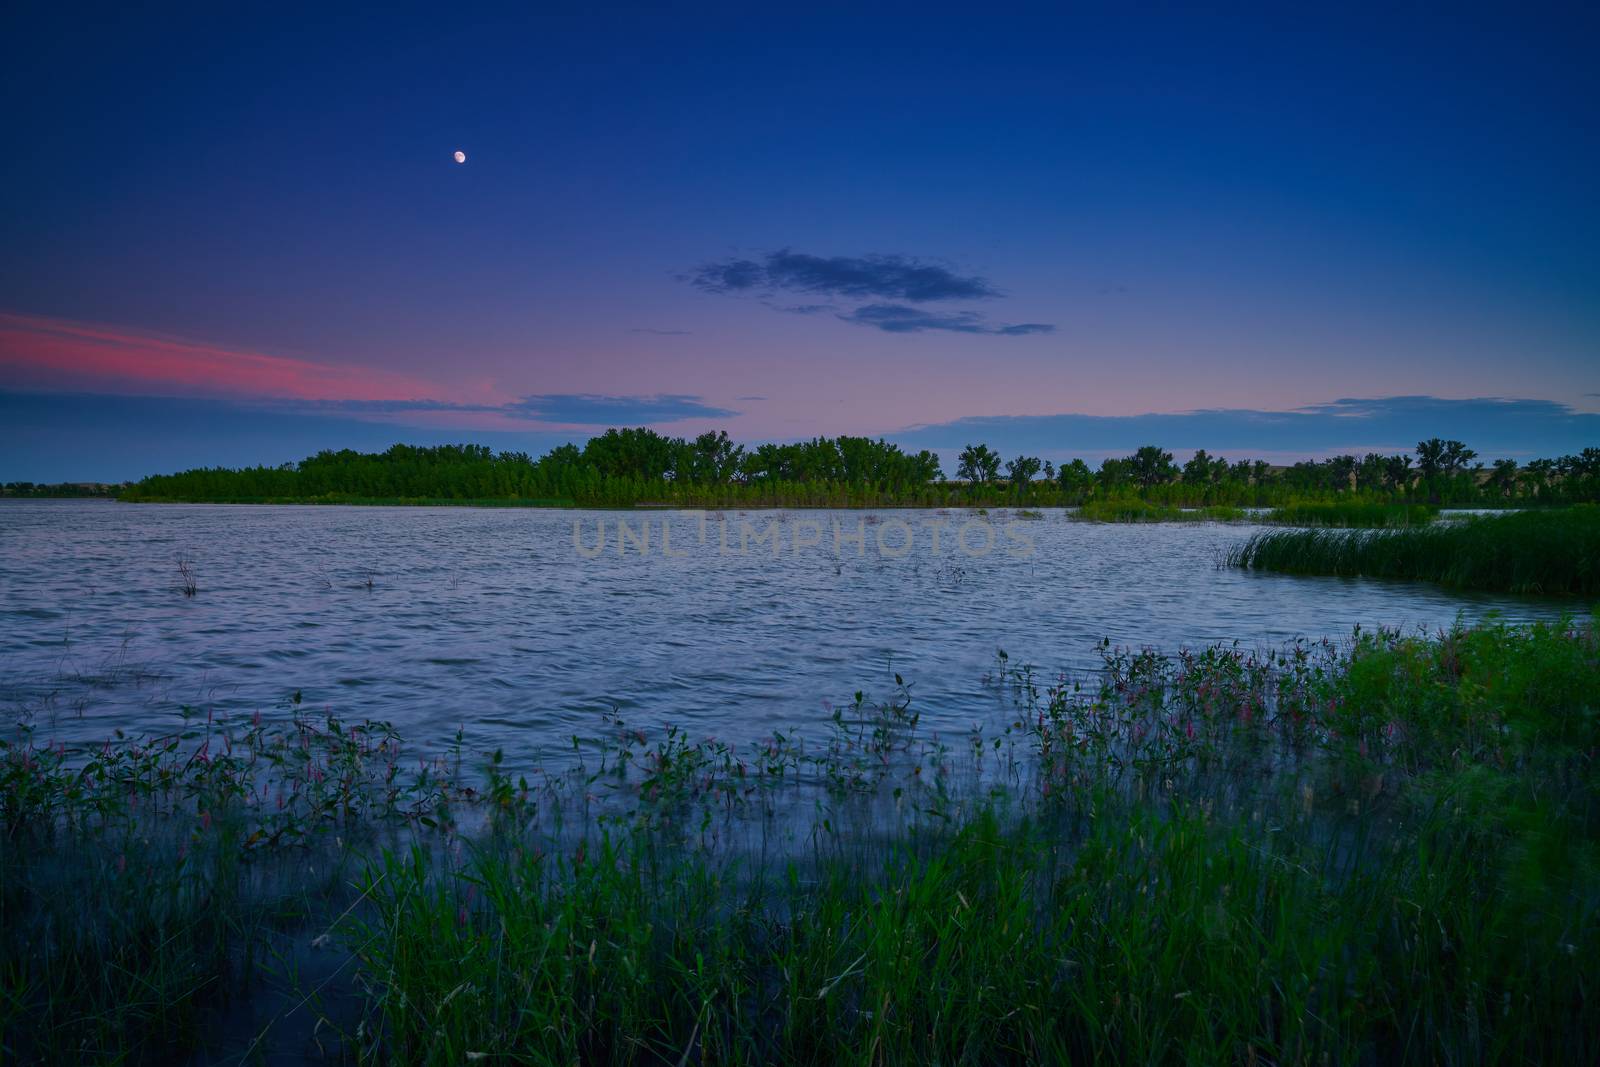 Moonrise over Oliver Reserve in Kimball, Nebraska.